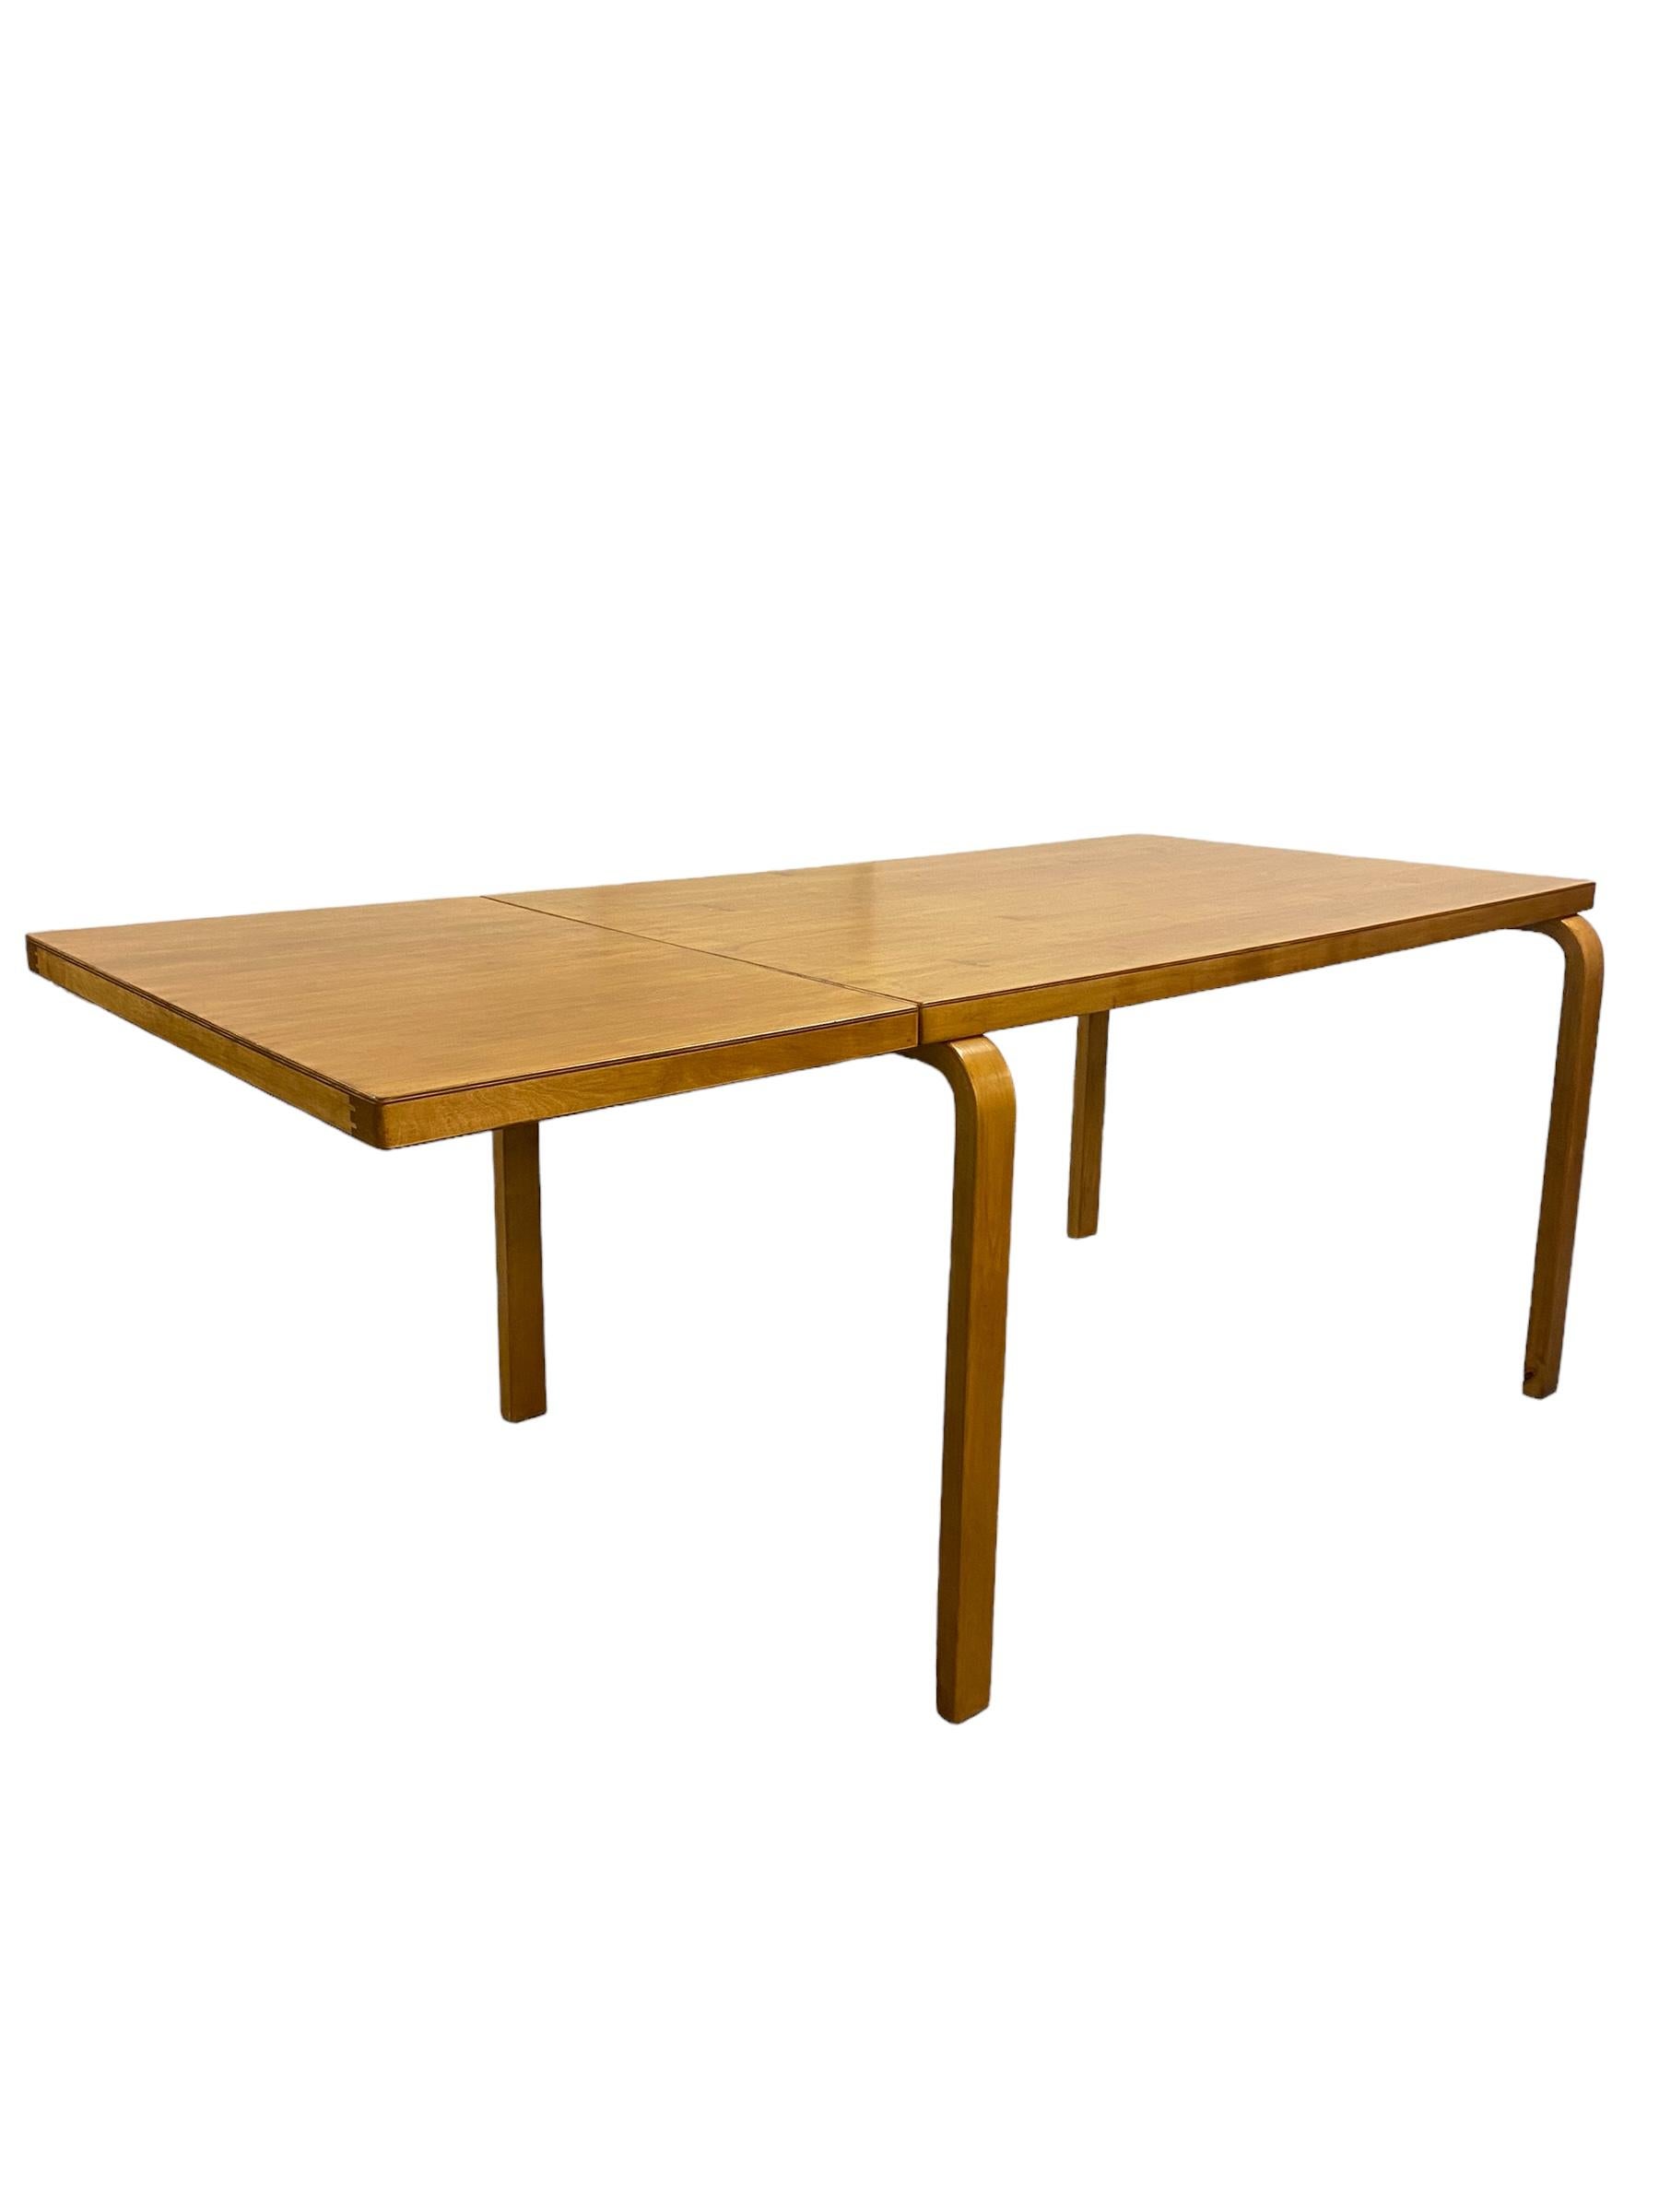 Ein klappbarer Tisch aus Birke mit schöner Patina, entworfen von Alvar Aalto und in den 1950er Jahren von Artek vertrieben. Die Patina, die mit dem Alter und dem Gebrauch von über 70 Jahren gewachsen ist, macht dieses Stück so einzigartig. Der Tisch